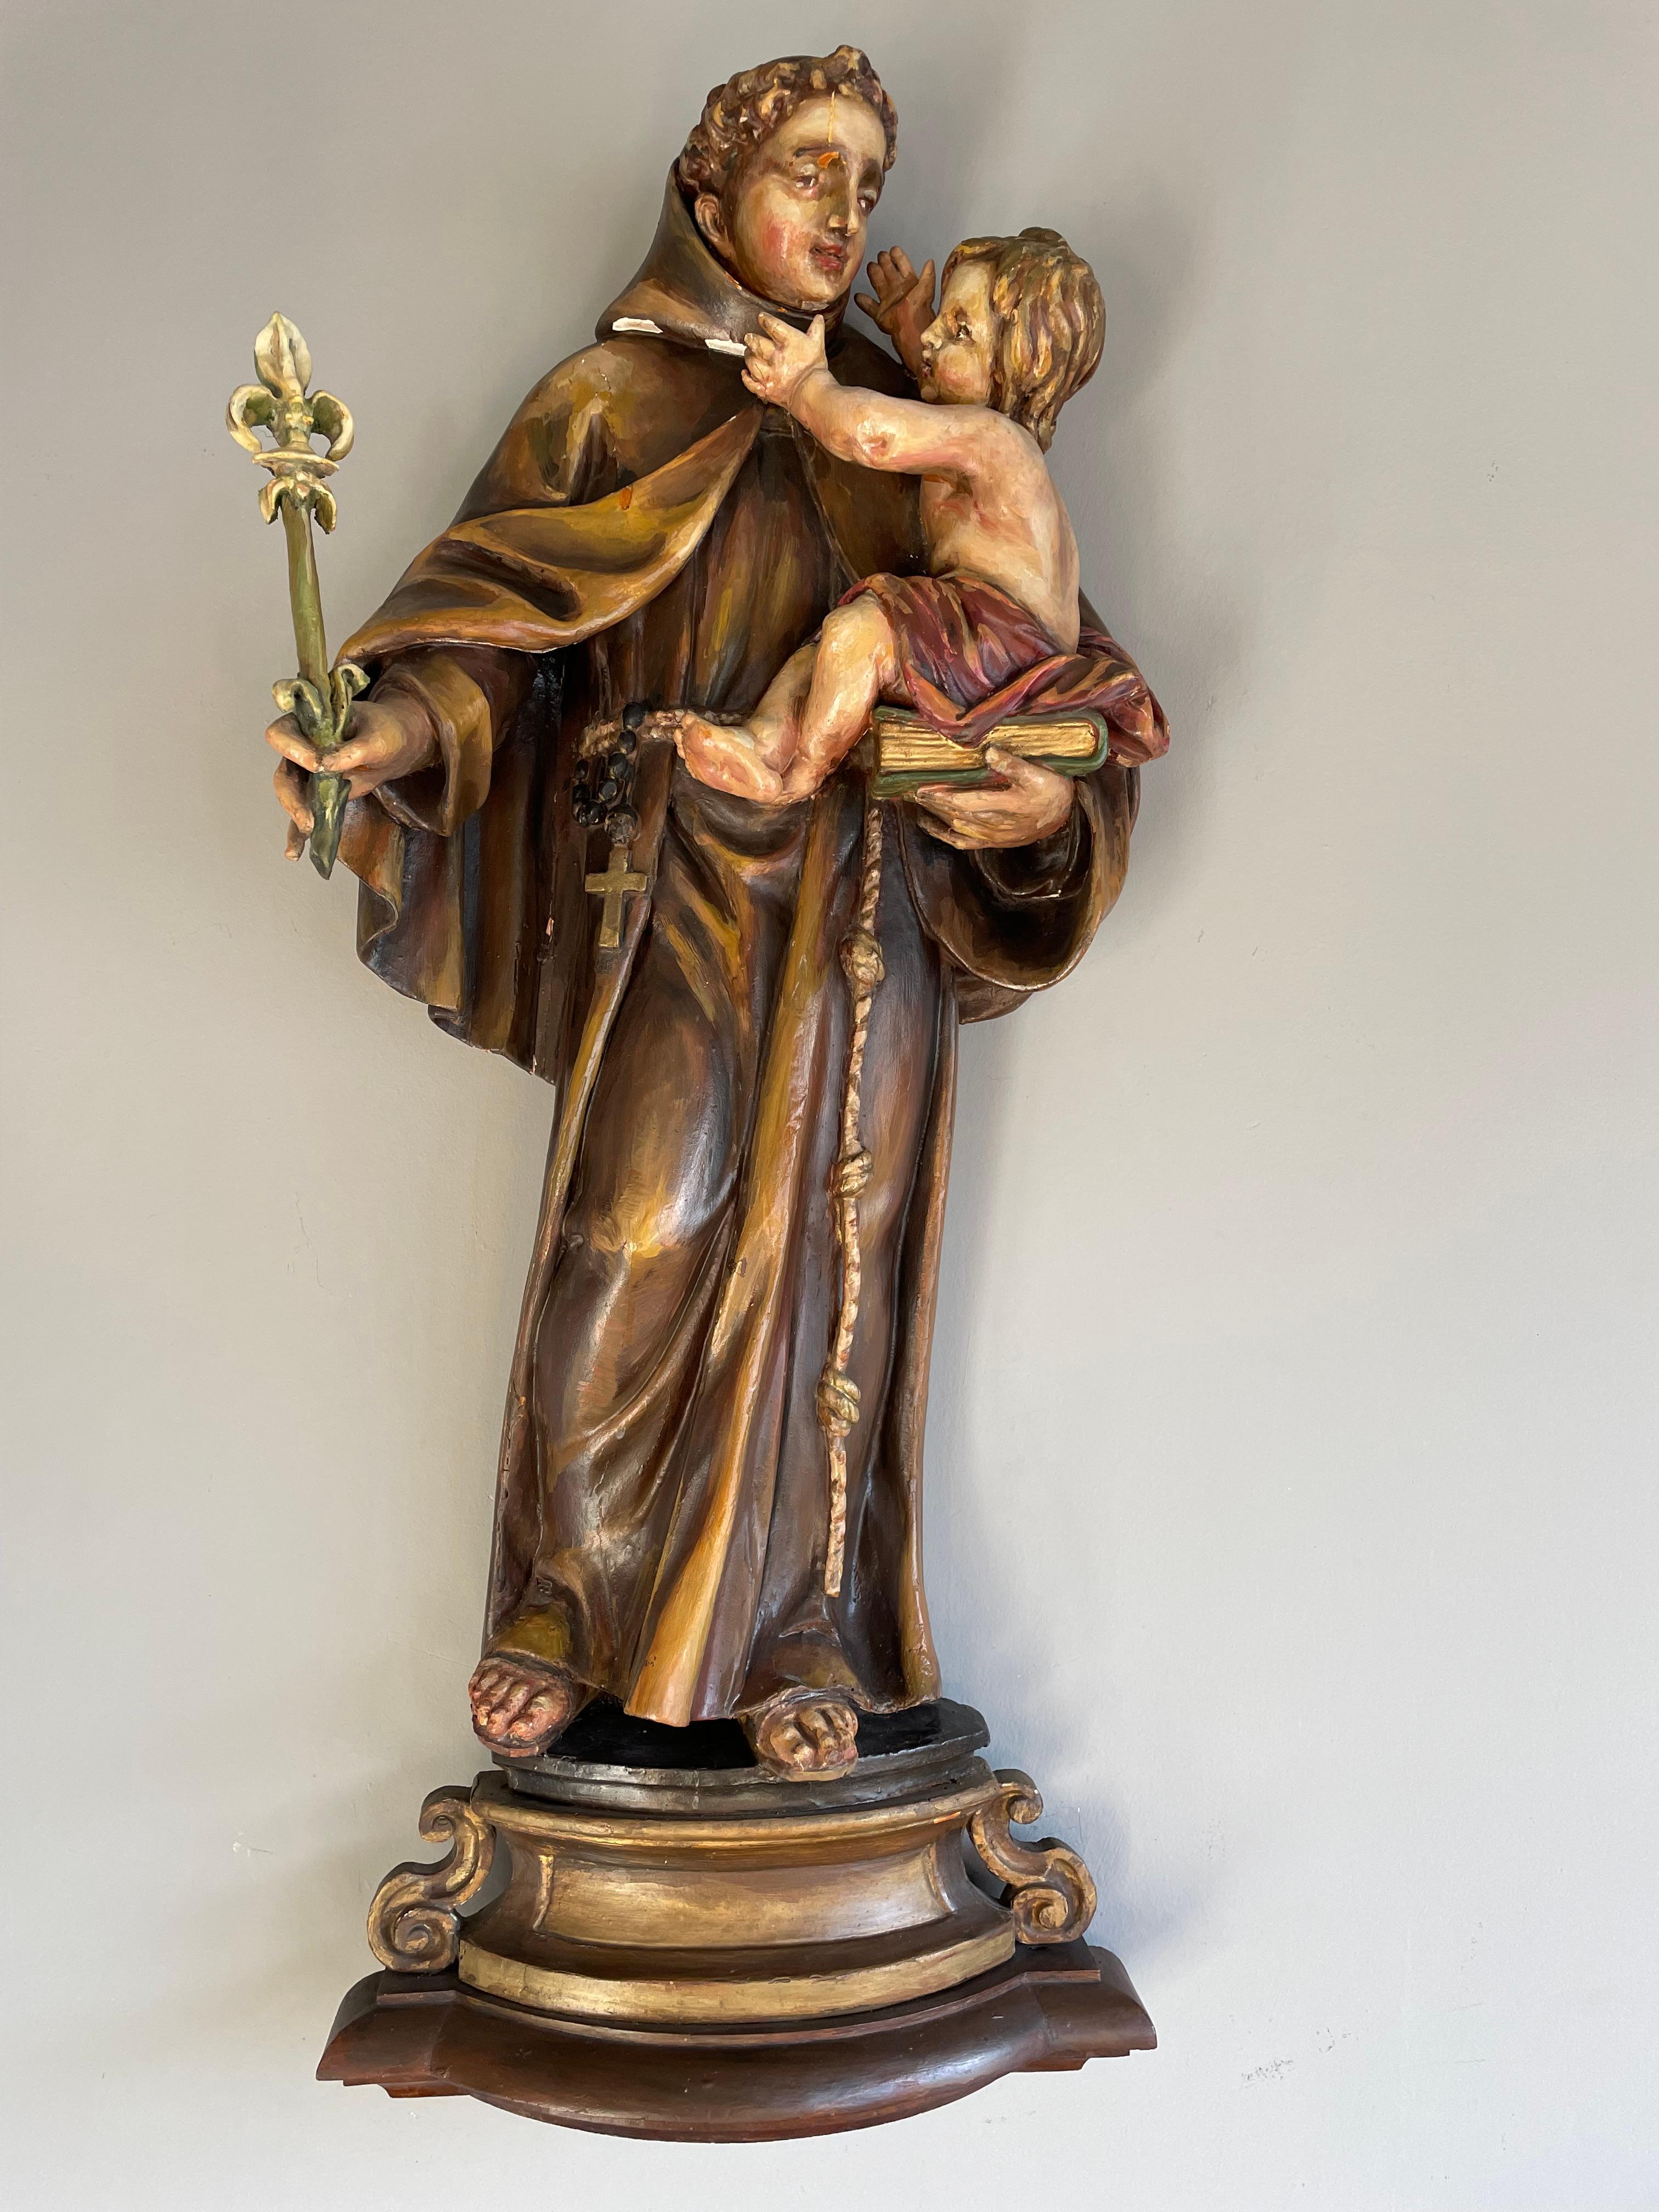 Seltene und wunderbare Skulptur des Heiligen Antonius in der Kirche, europäisches Barock aus dem 17.

Diese seltene und große Wandstatuette des heiligen Franziskaners Antonius ist ein weiterer großartiger Fund aus unserer Sammlung. Dieses wunderbare